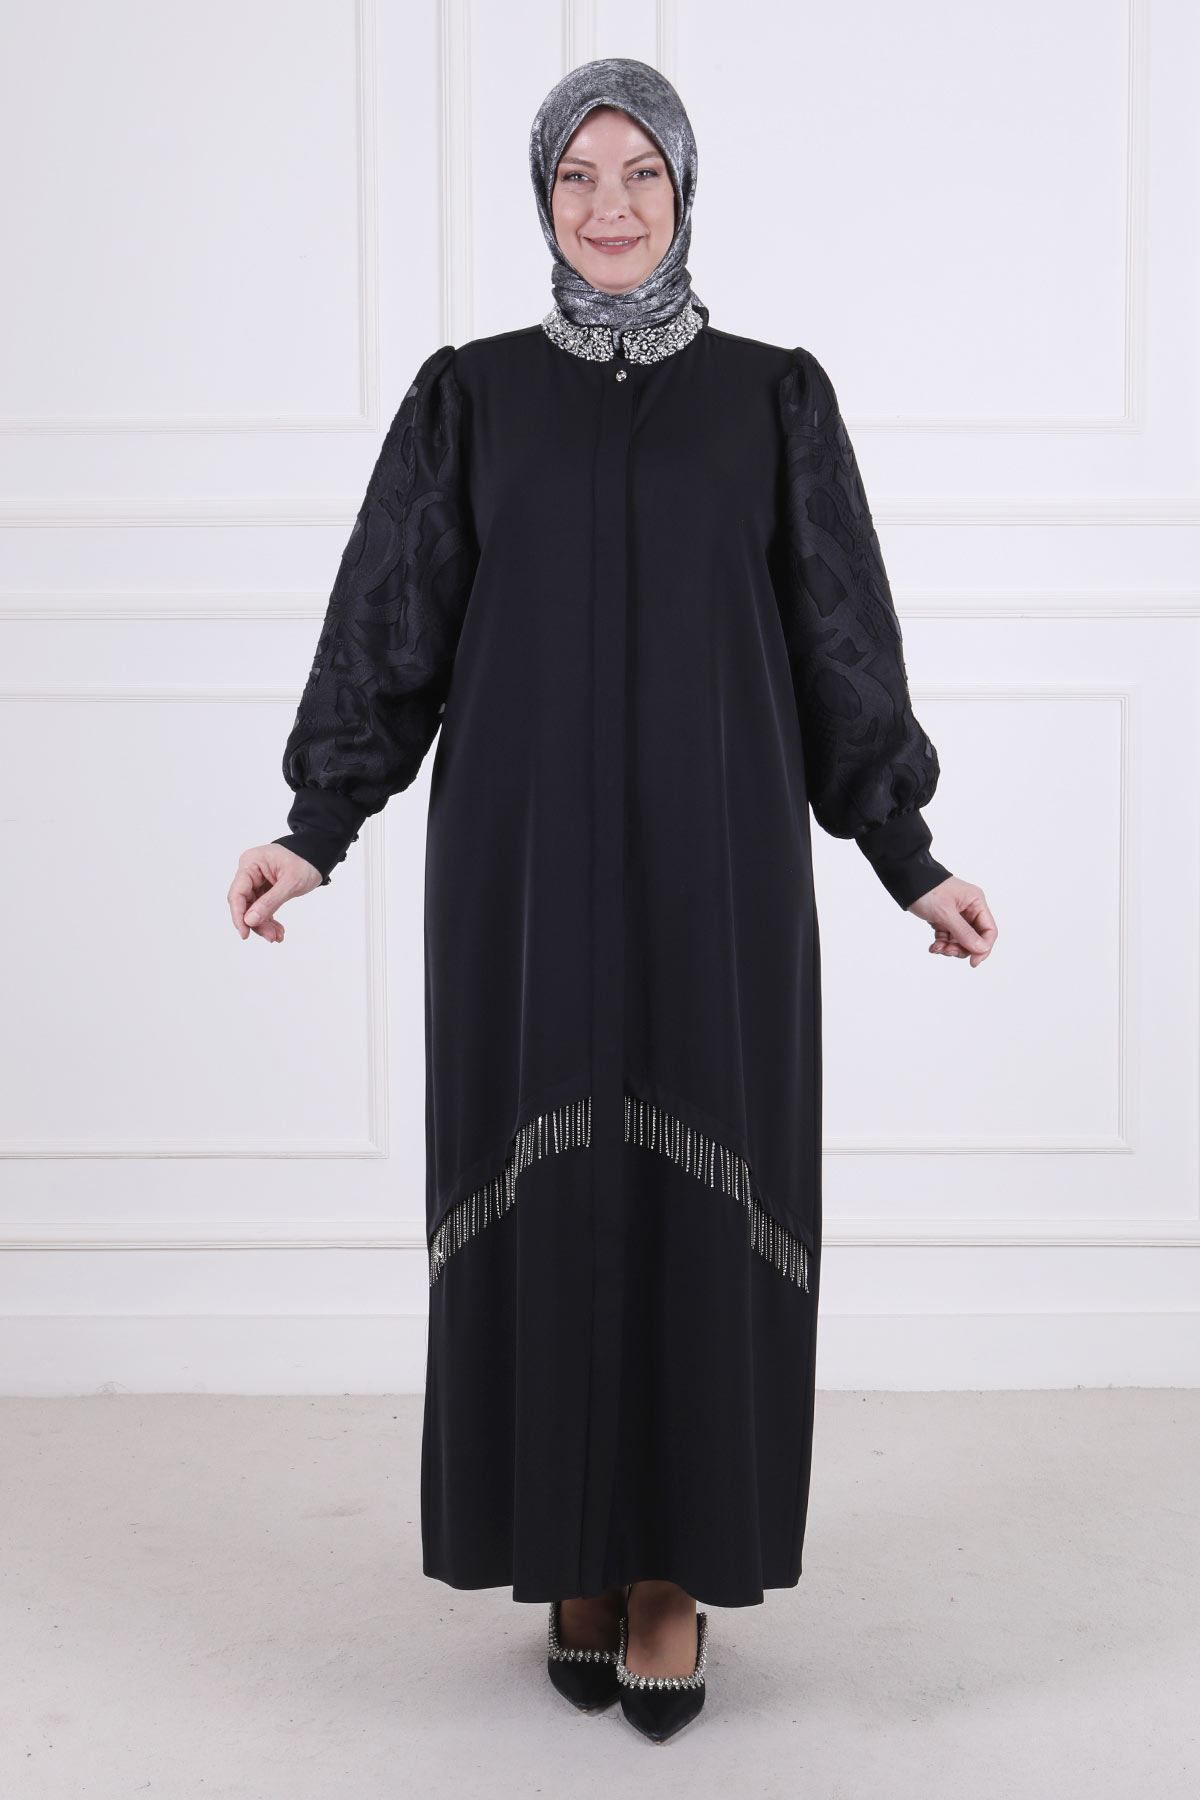 ottoman wear OTW65010 Büyük Beden Gizli Düğmeli Abaya Siyah